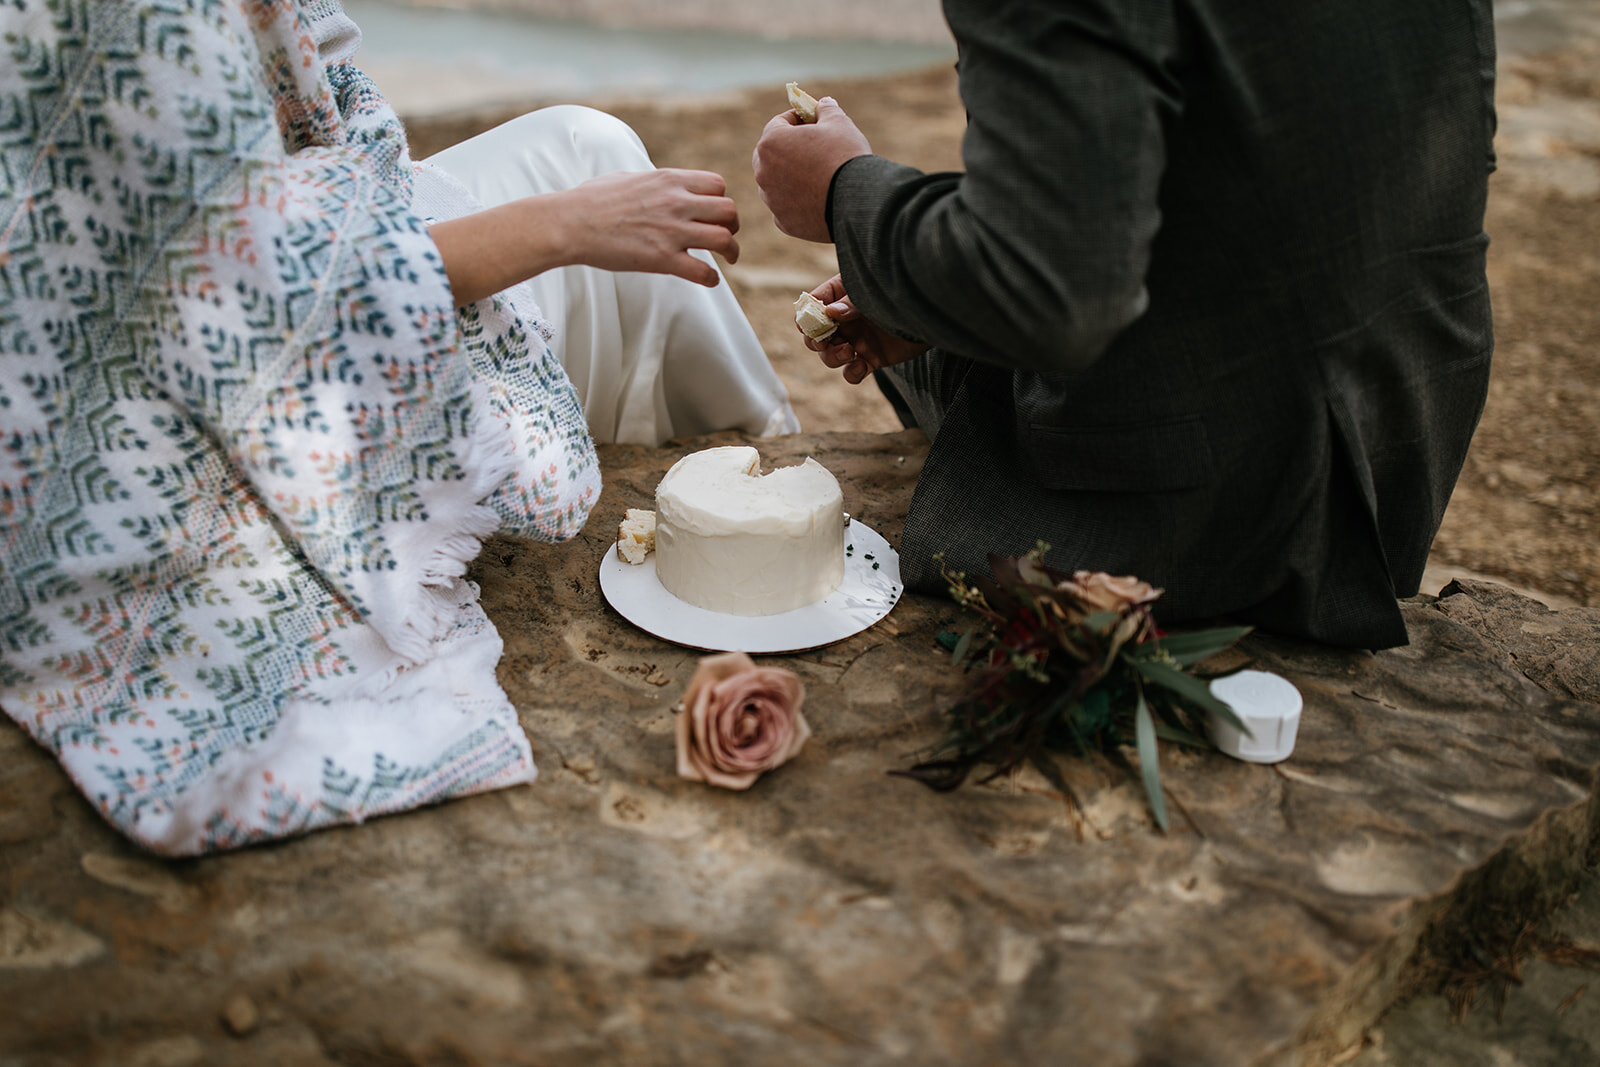 snoopers-rock-adventure-elopement-chattanooga-wedding-photographerfoster-falls-elopement-chattanooga-wedding-photographer-451_websize.jpg